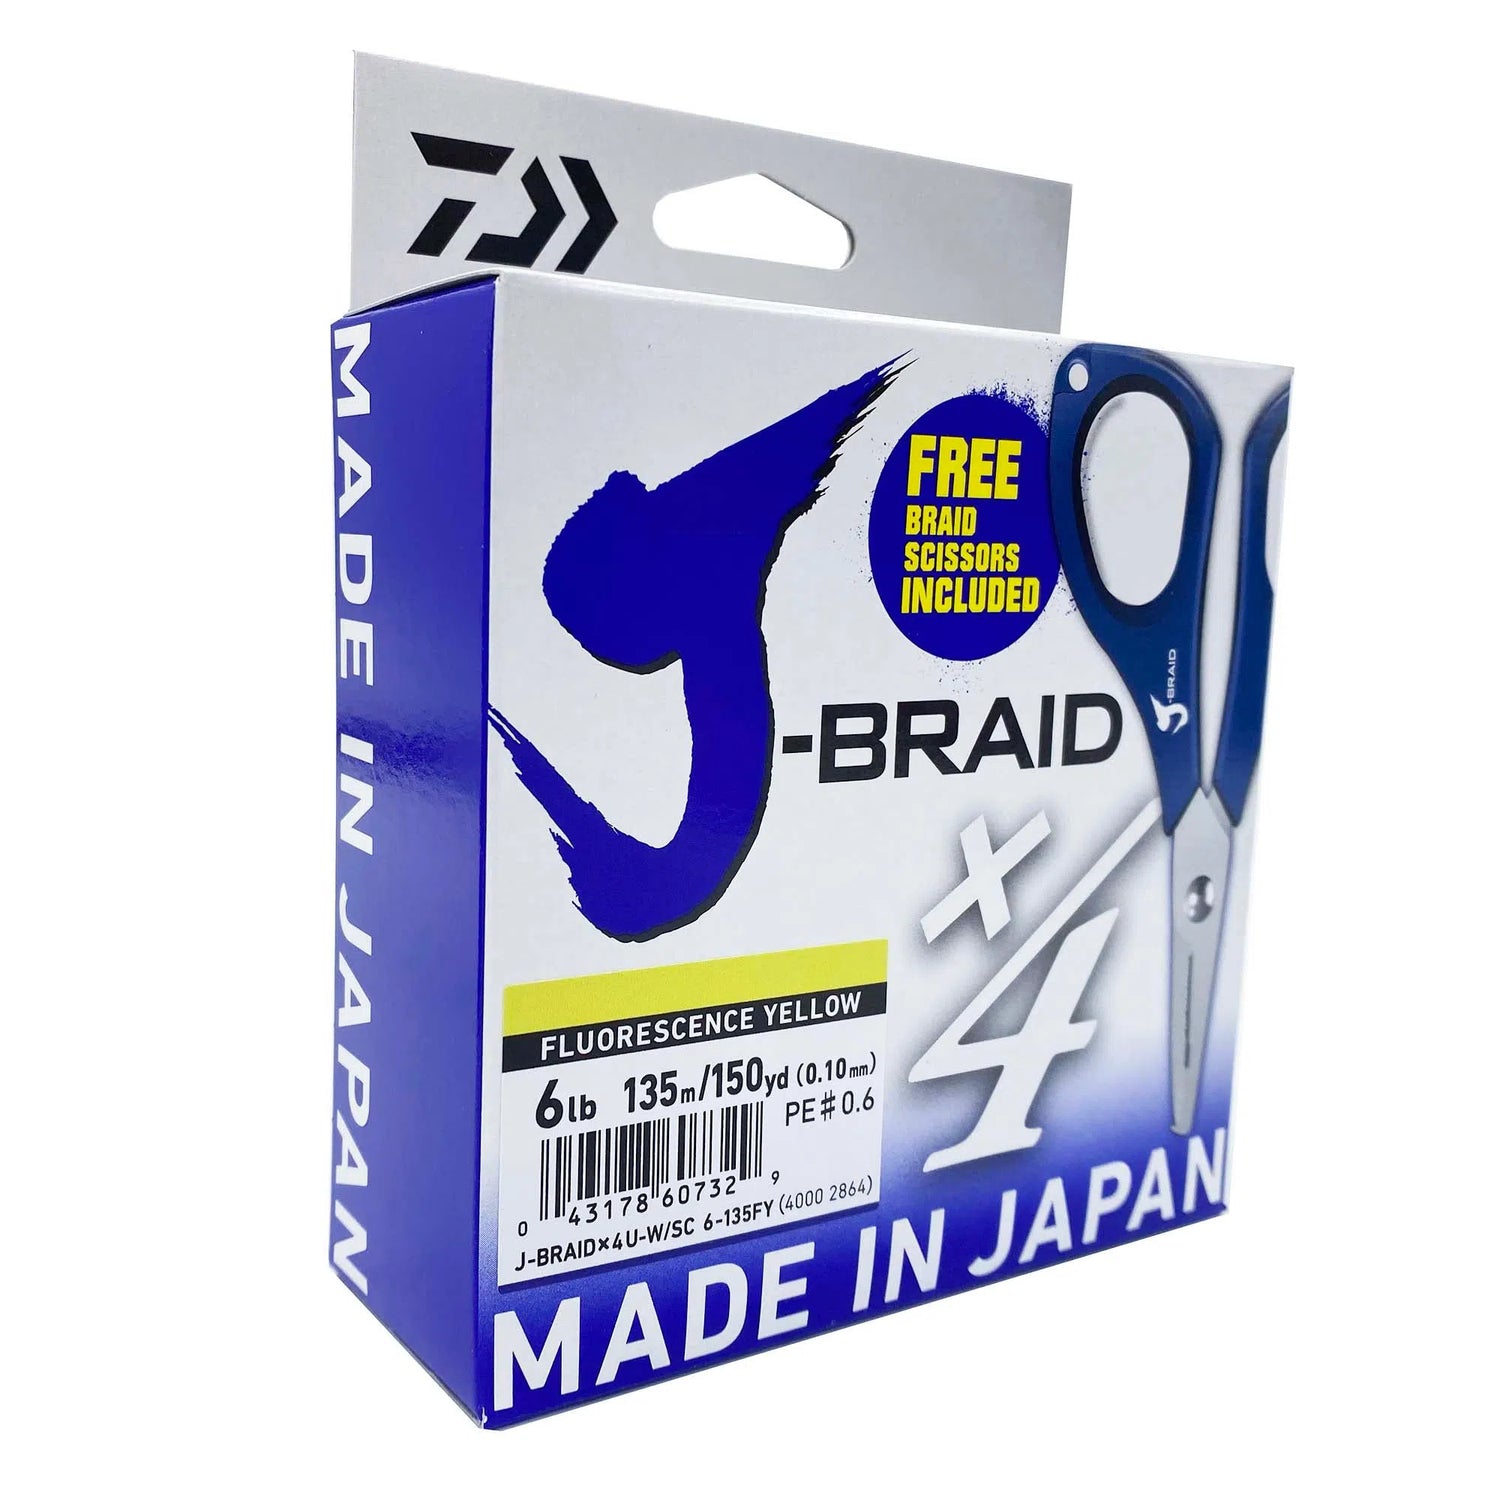 Daiwa J-Braid x4 Yellow Line with free Braid Scissors